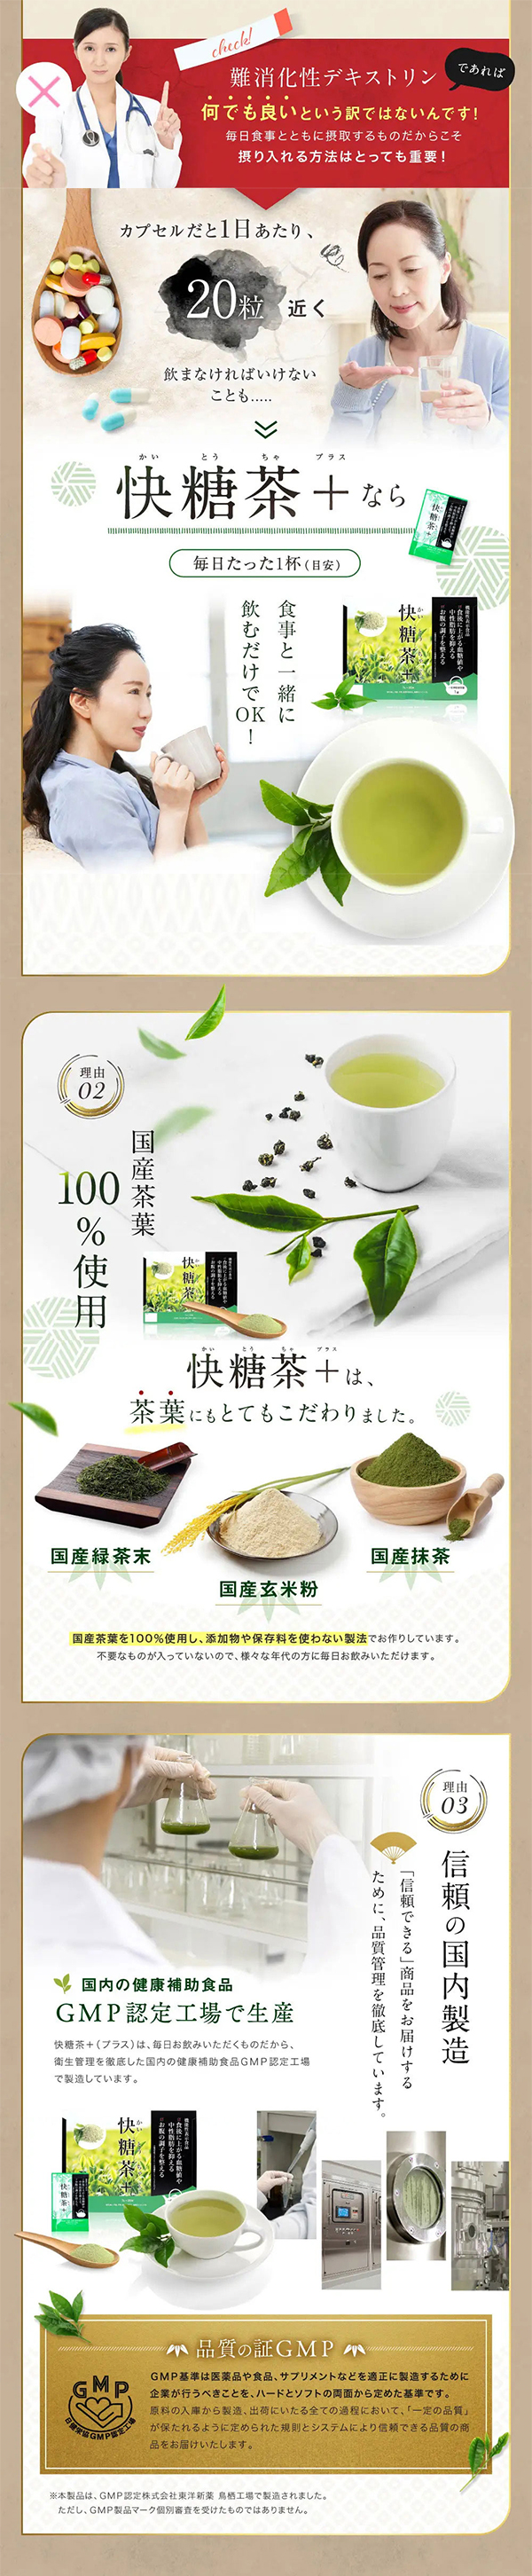 快糖茶 1ヵ月分(7g×30袋) 未開封